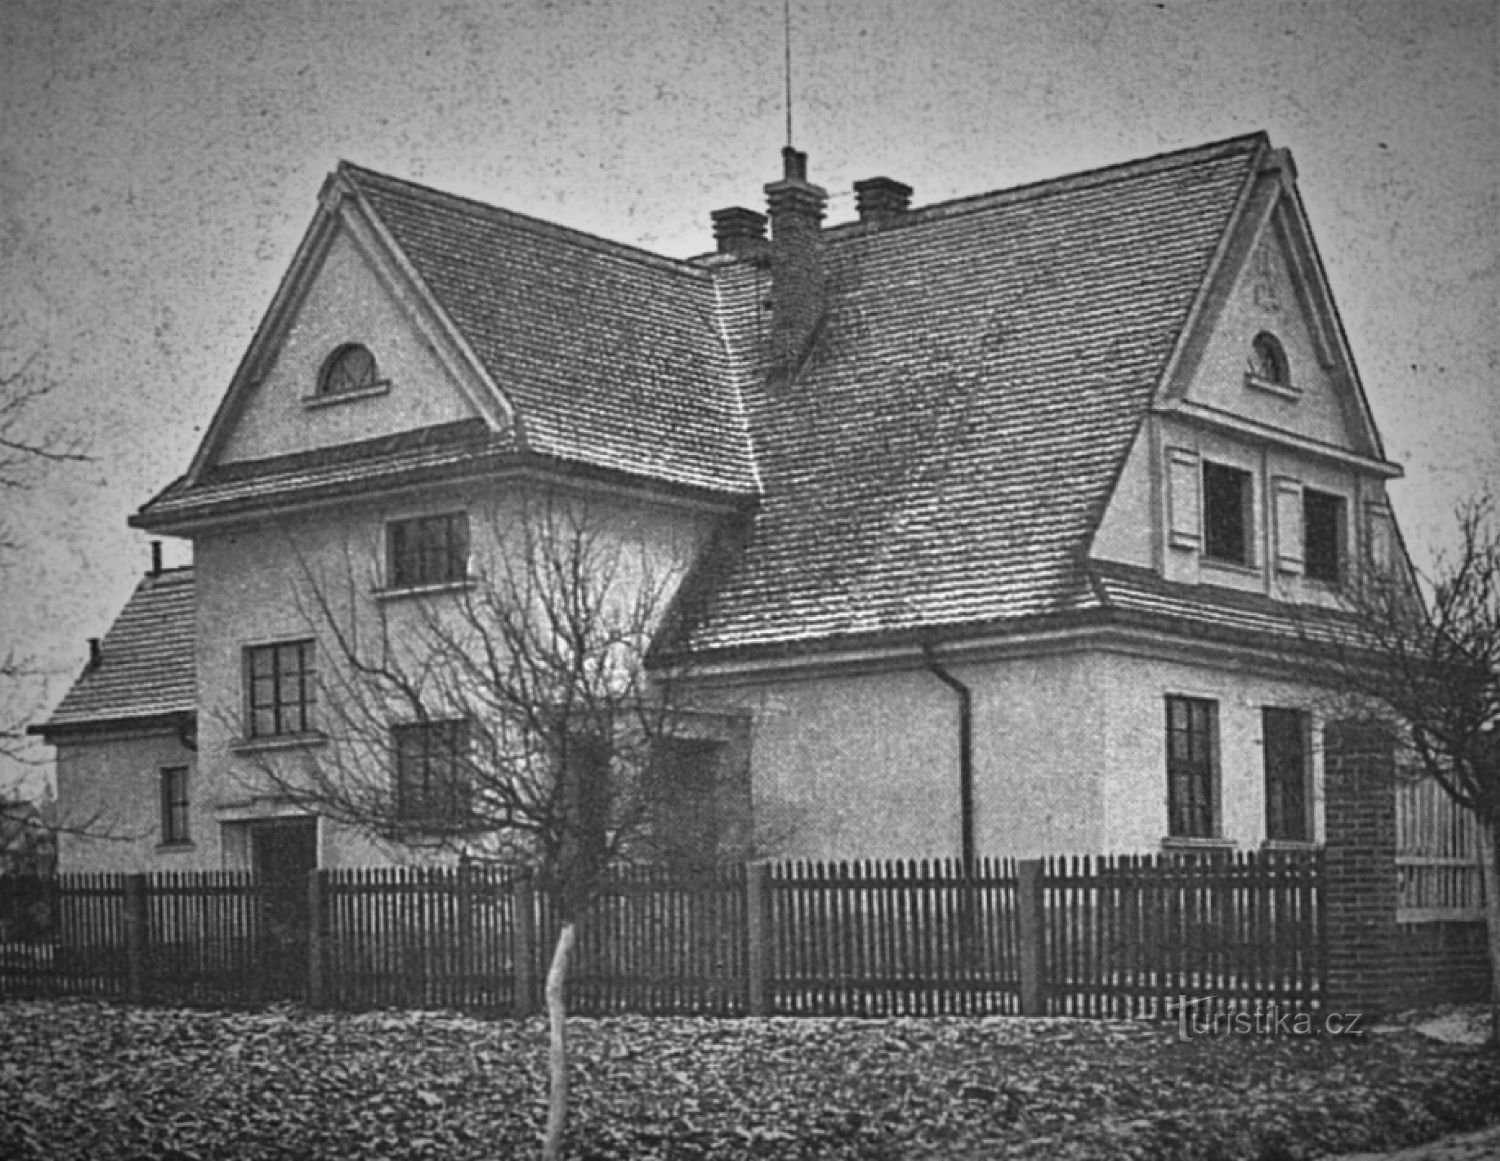 Escuela general de la minoría checa de Masaryk en Velká Bukovina en 1925